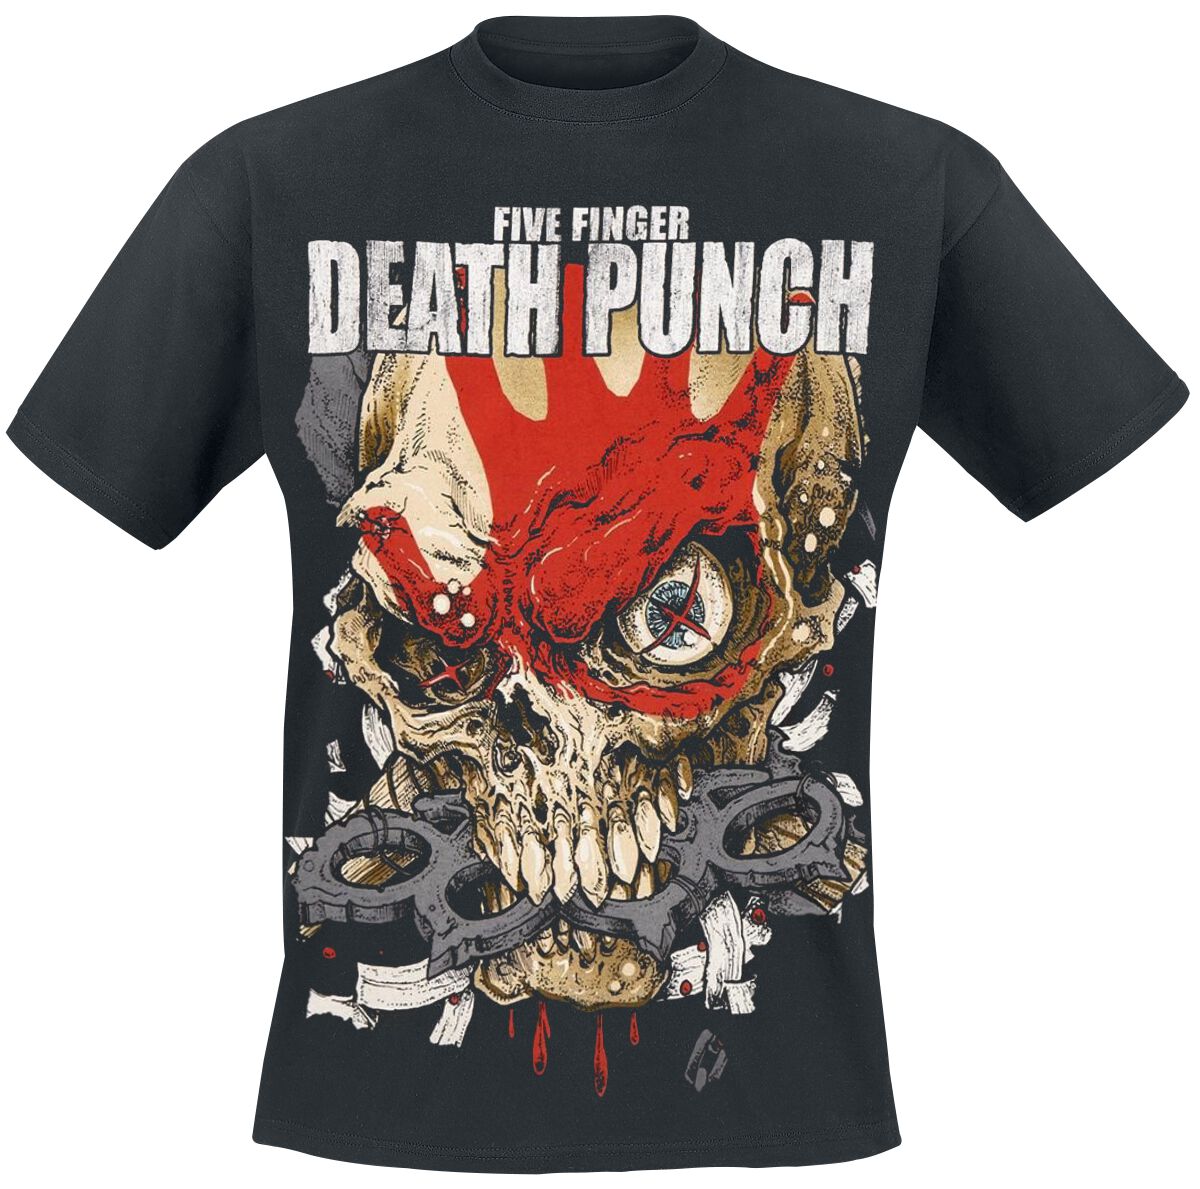 Five Finger Death Punch T-Shirt - Knucklehead Kopia Exploded - S bis XXL - für Männer - Größe M - schwarz  - Lizenziertes Merchandise!